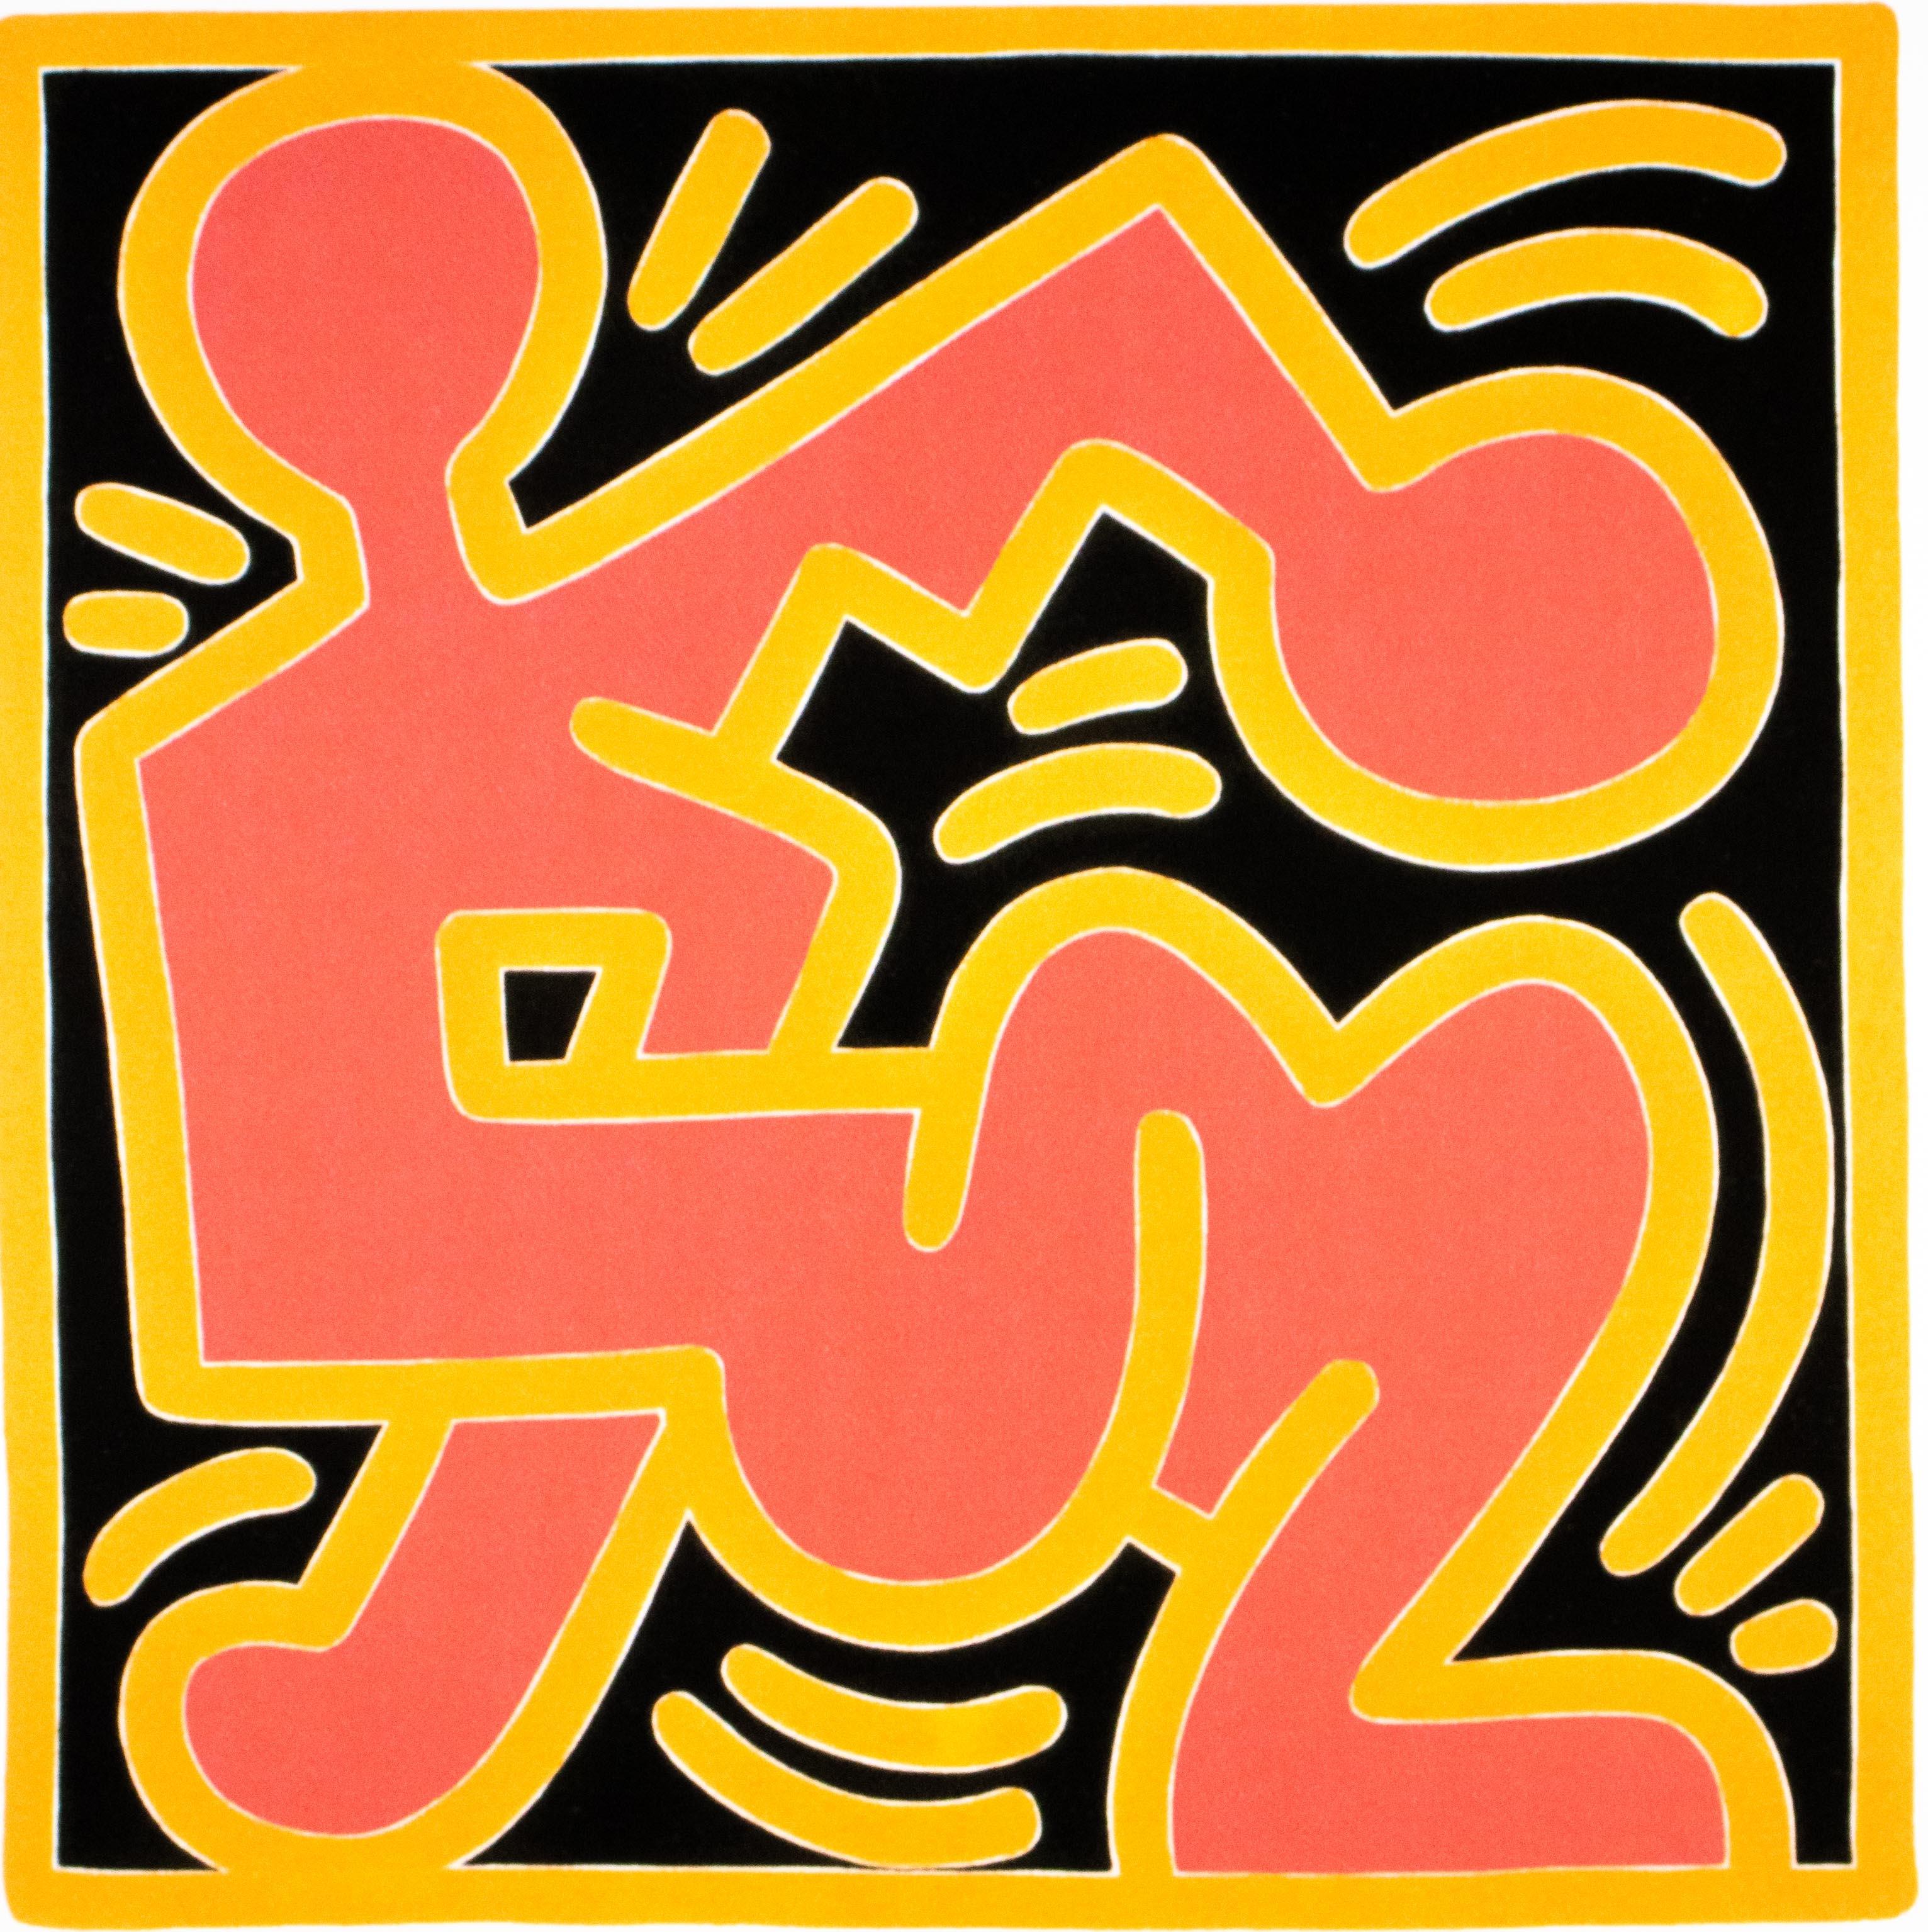 KEITH HARING - Ohne Titel
Limitierte Auflage aus den 1990er Jahren von der Keith Haring Foundation, Inc.

Insgesamt nur 150 Exemplare (hier 15/150).
Lithographie auf dickem Karton.

In der Platte signiert.
Mit Bleistift handnummerierte Ausgabe.
Mit